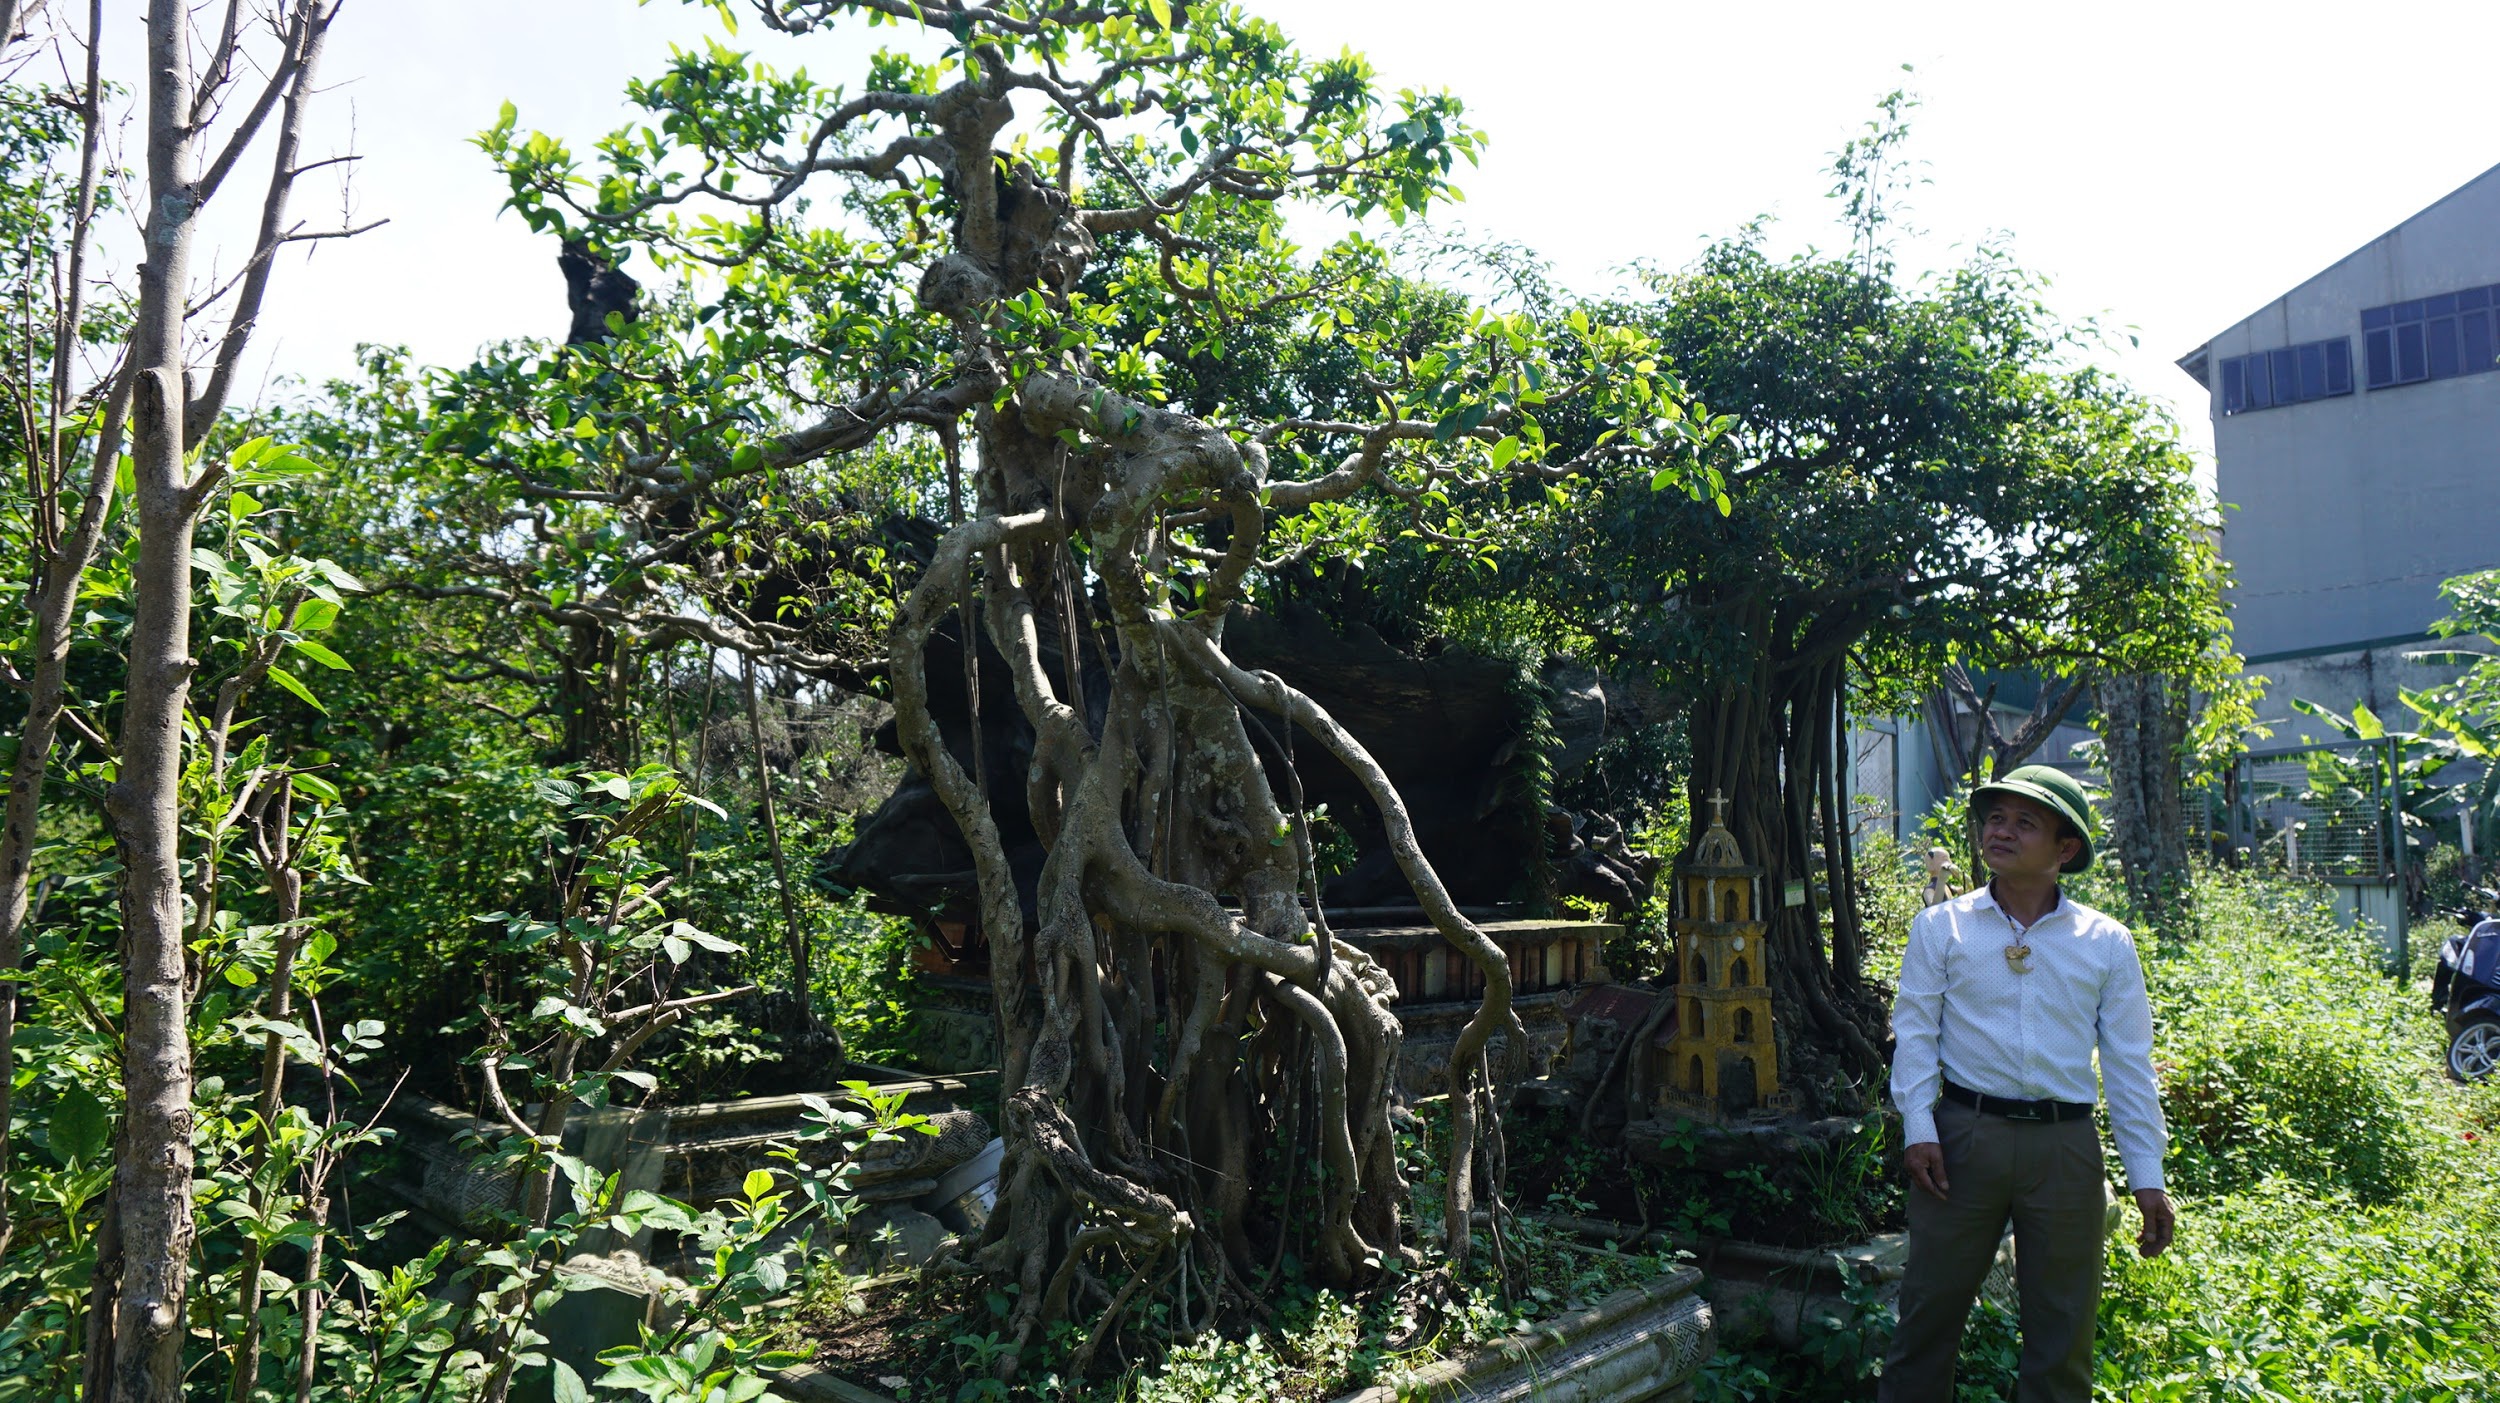 Khu vườn bỏ hoang toàn 'siêu cây' bạc tỷ của đại gia nức tiếng một thời Hang-chuc-goc-co-thu-dang-than-dang-phat-gia-tram-ty-bo-hoang-o-ha-noidocx-1588065446332